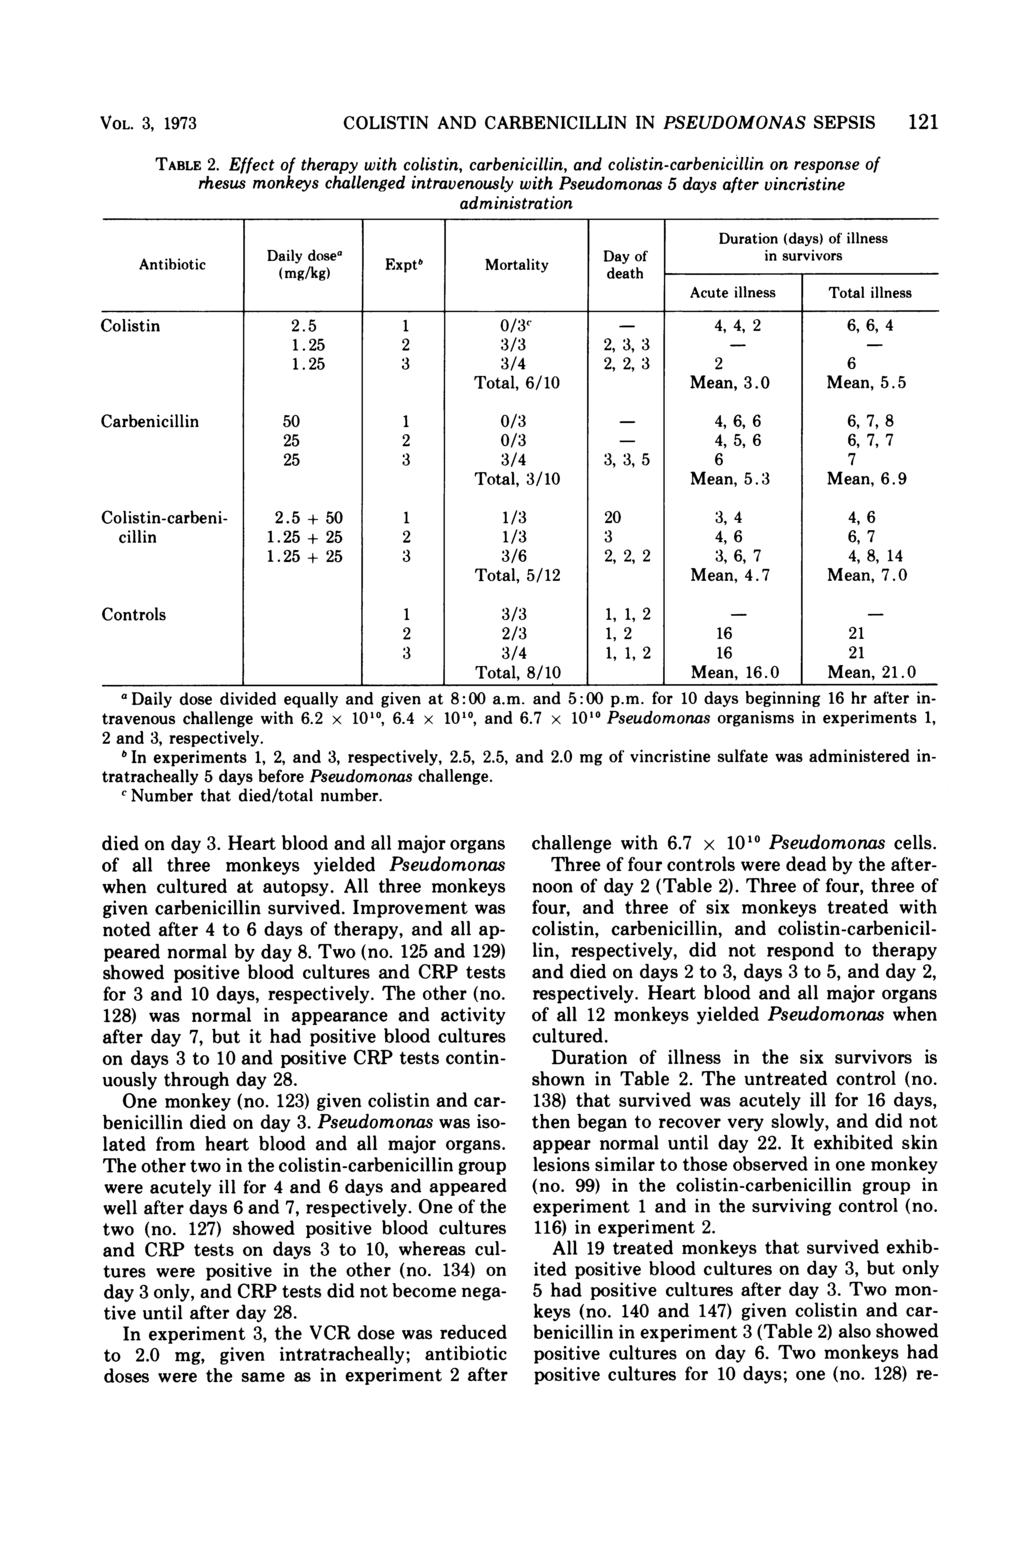 VOL. 3, 1973 COLISTIN AND CARBENICILLIN IN PSEUDOMONAS SEPSIS 121 TABLE 2.